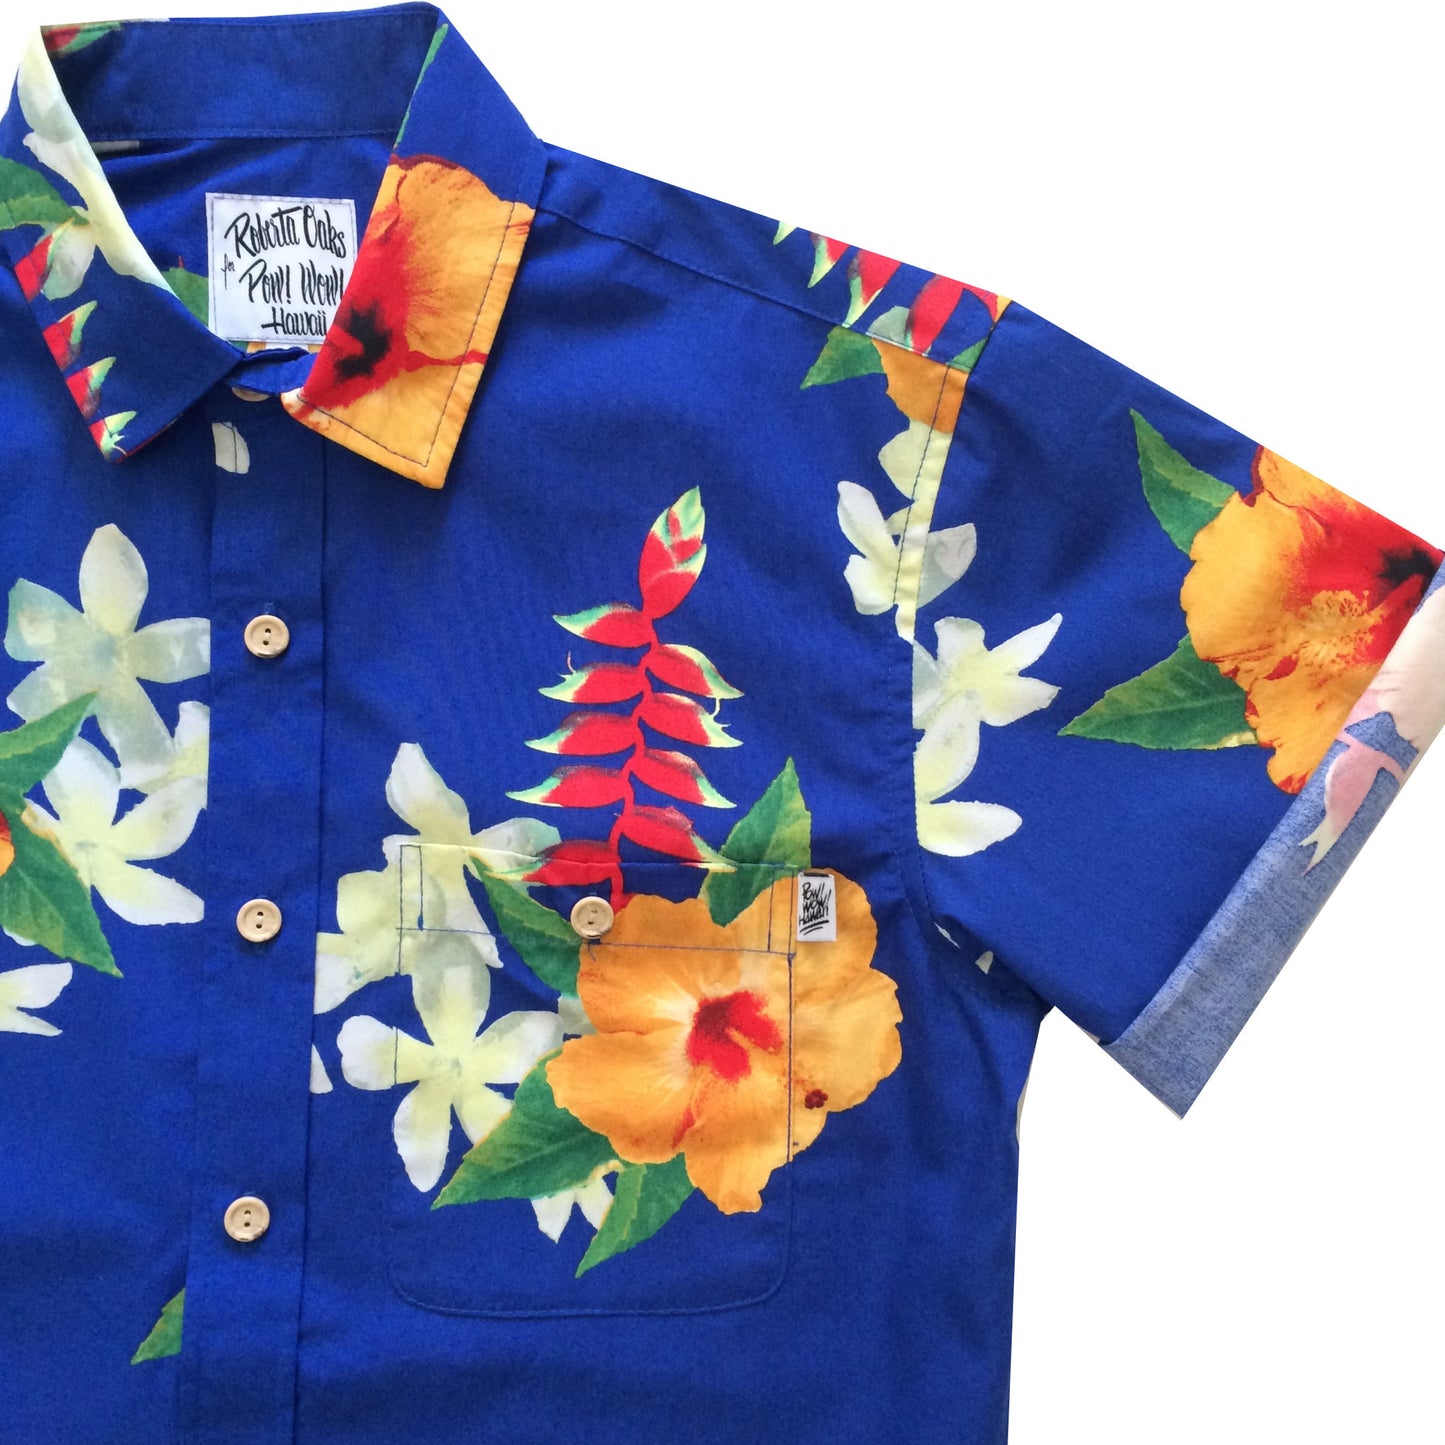 Pow! Wow! Hawaii 2016 Halekauwila Shirt - SOLD OUT